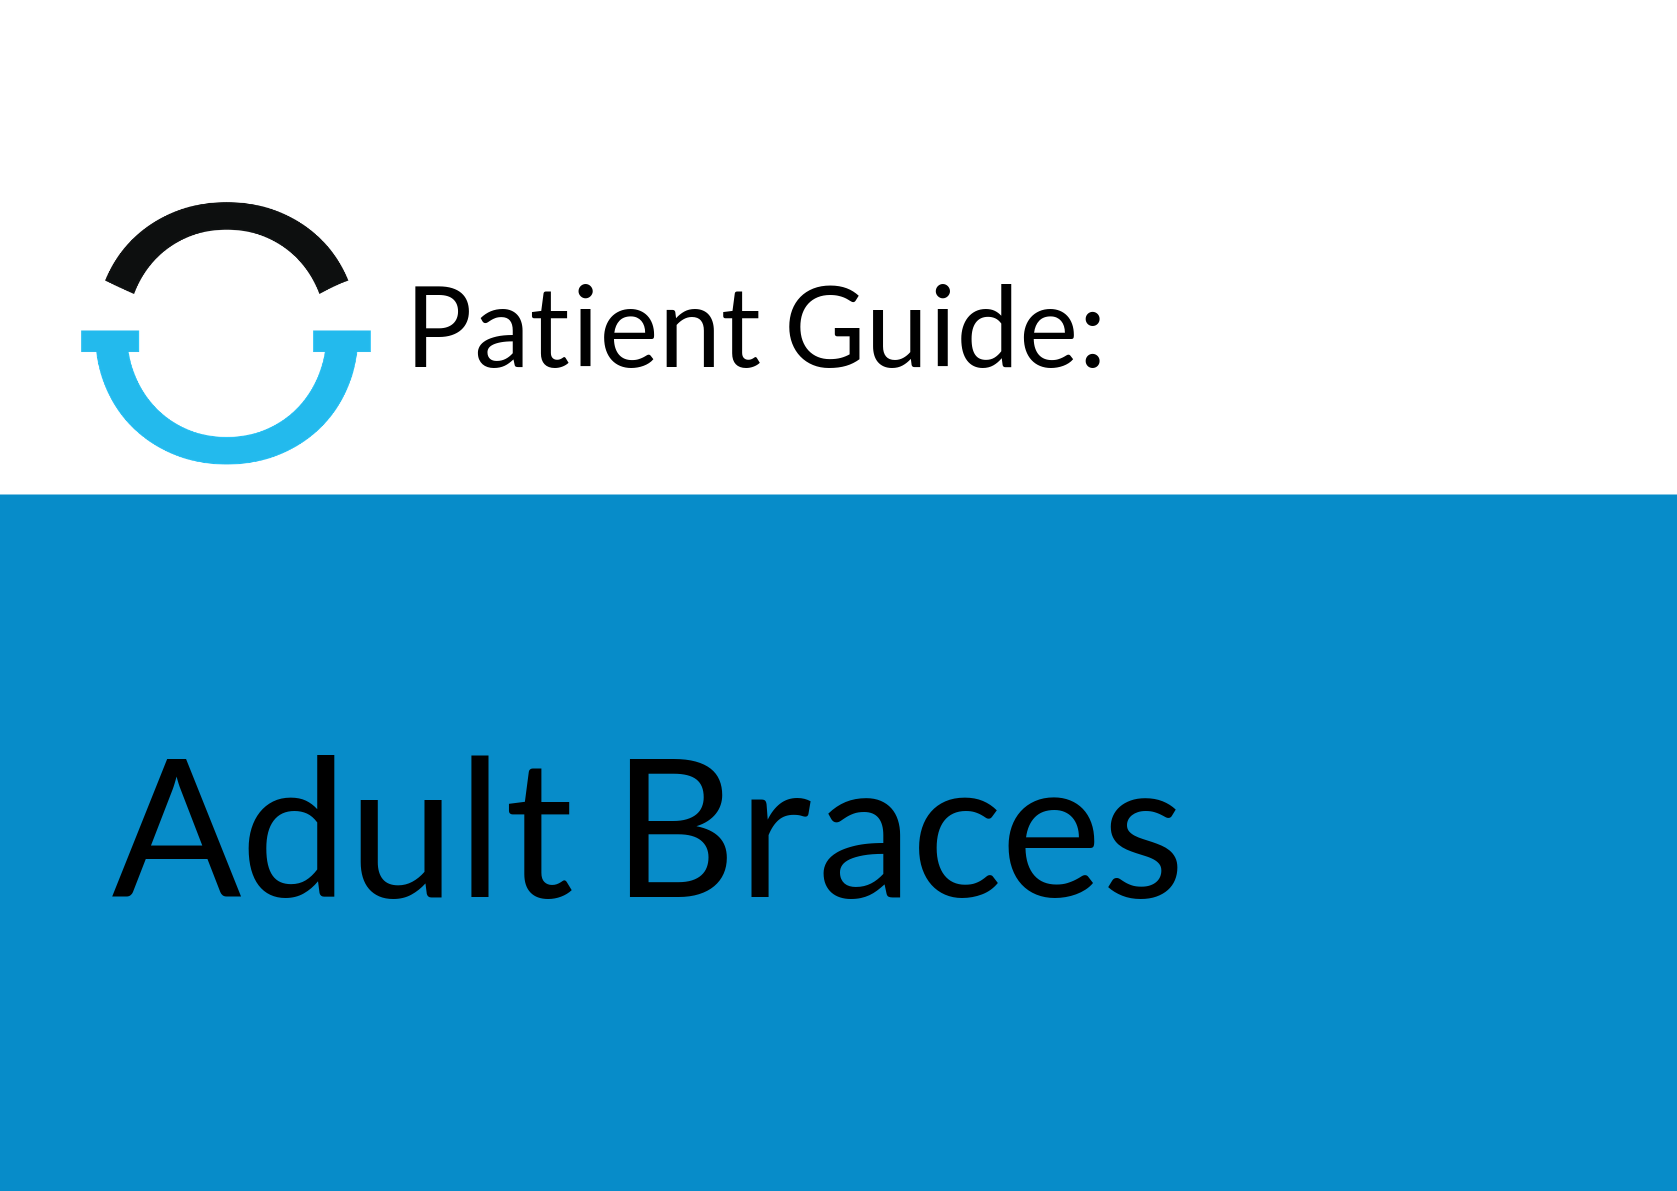 Patient Guide Header Image – Adult Braces LARGE